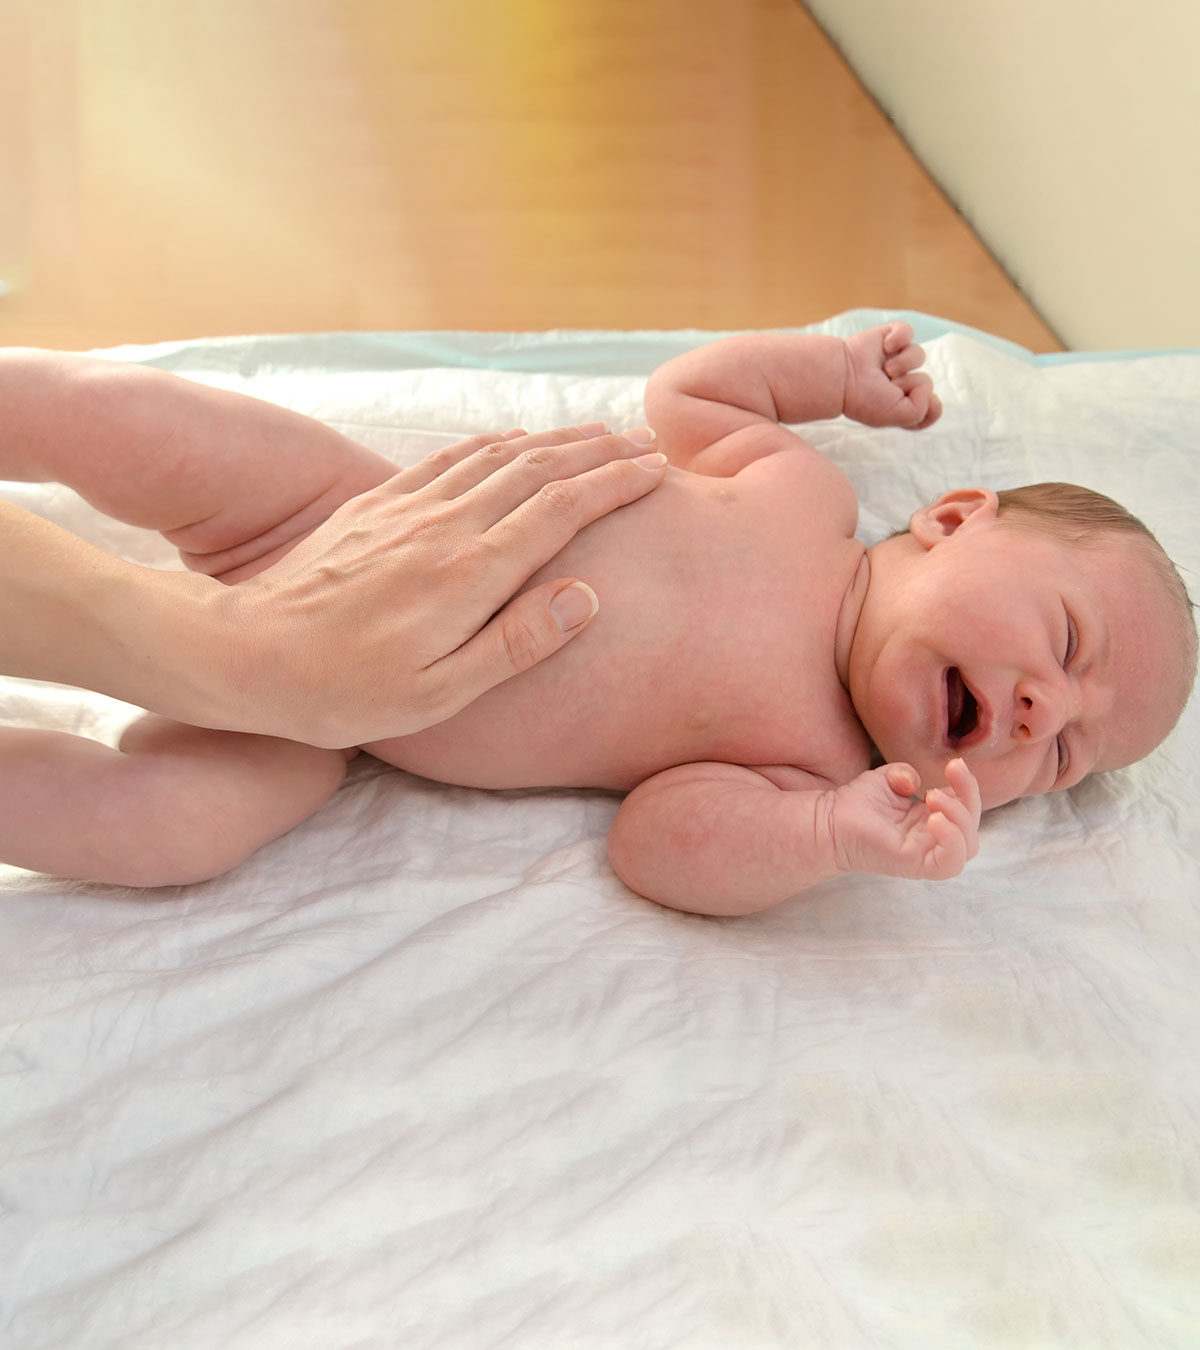 婴儿胃痛:原因、症状和家庭疗法